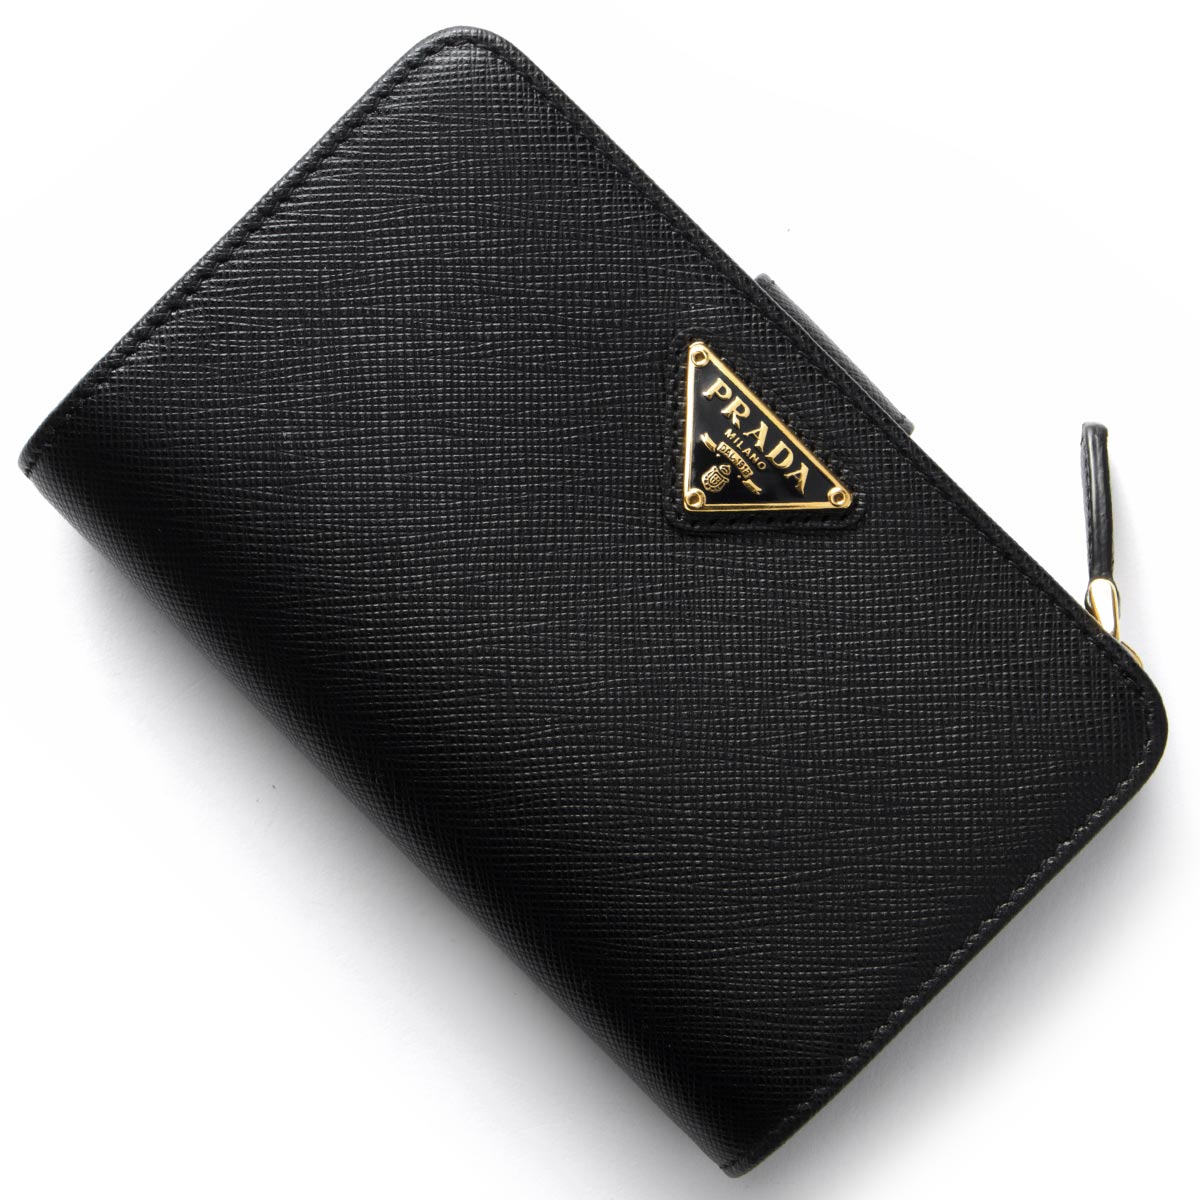 【極美品】PRADA 長財布 二つ折り サフィアーノレザー 三角ロゴ ブラック